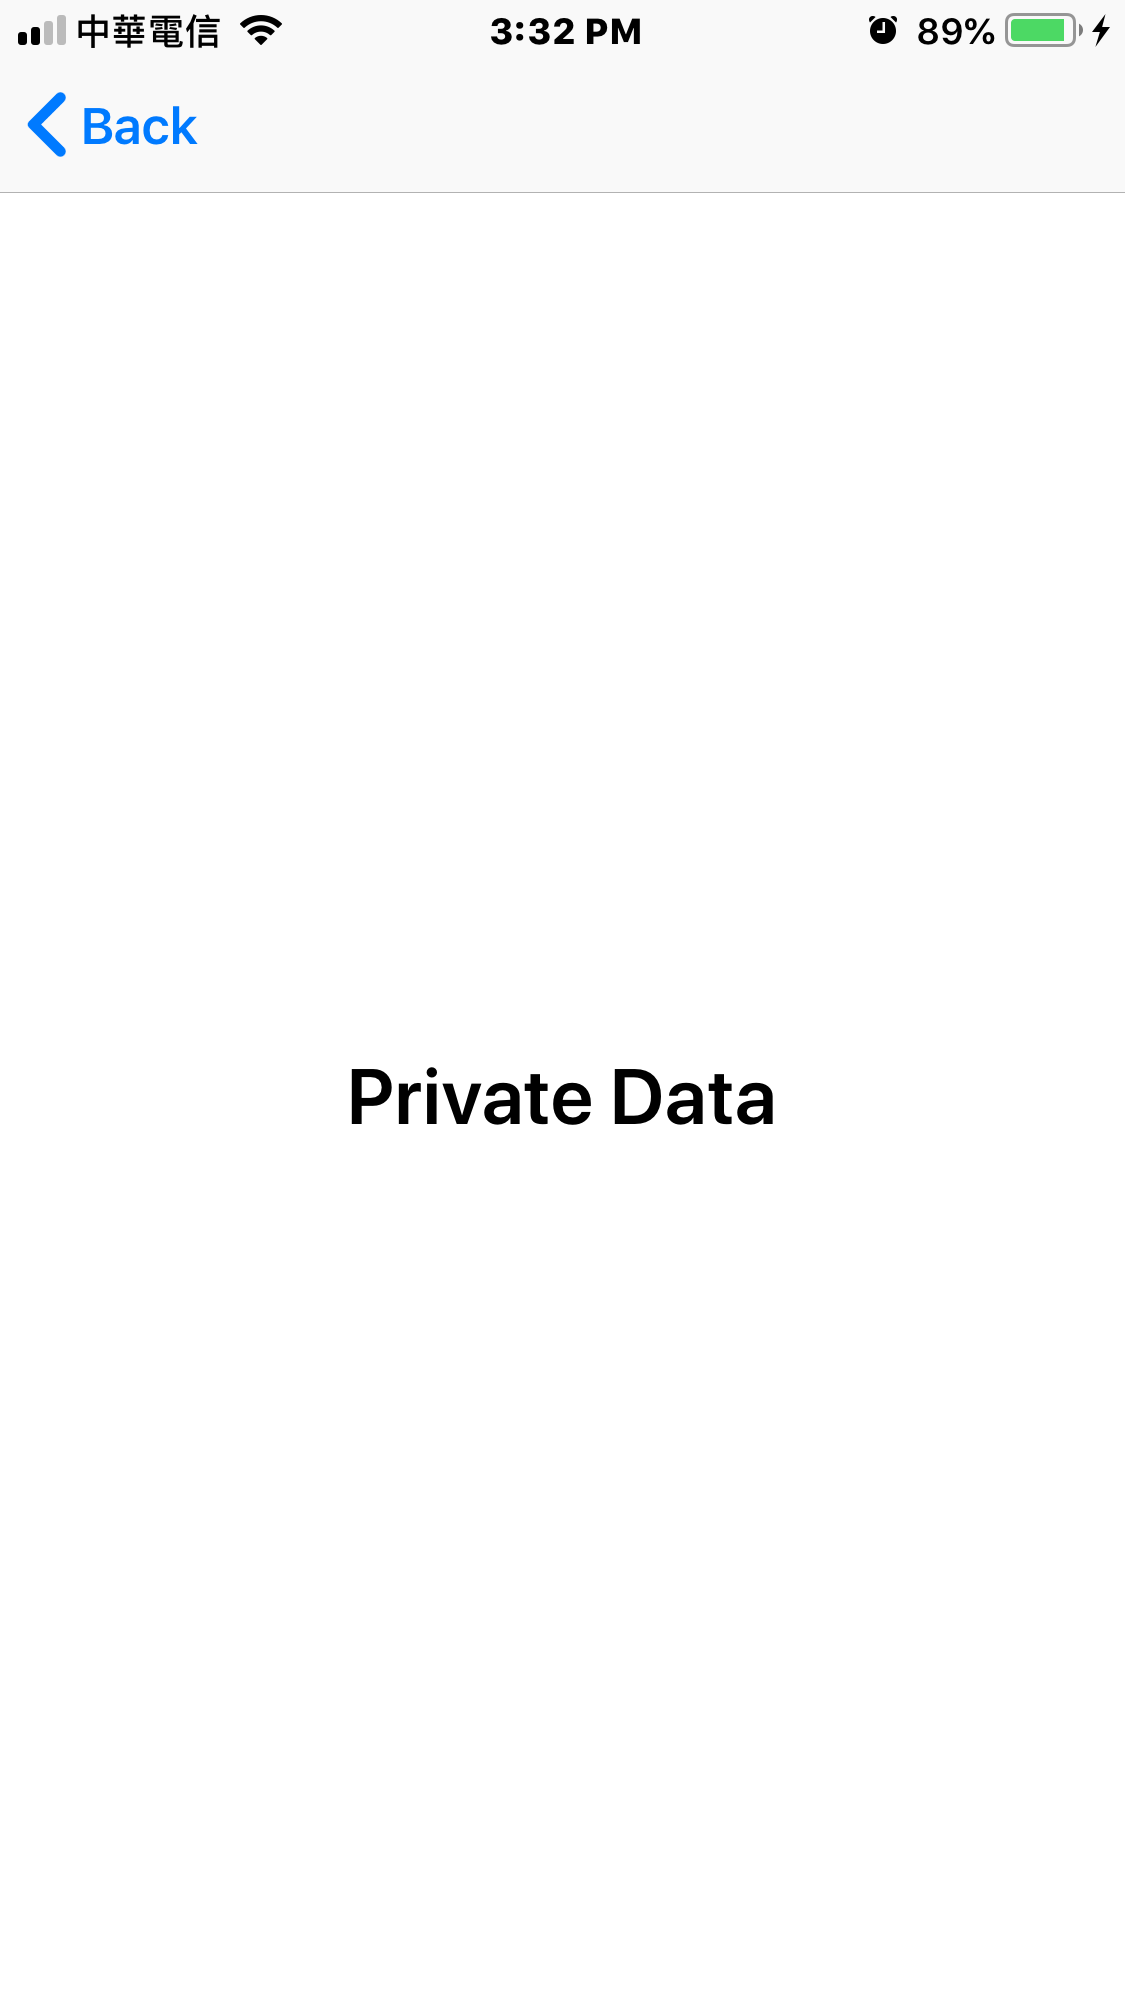 Demo Private Data